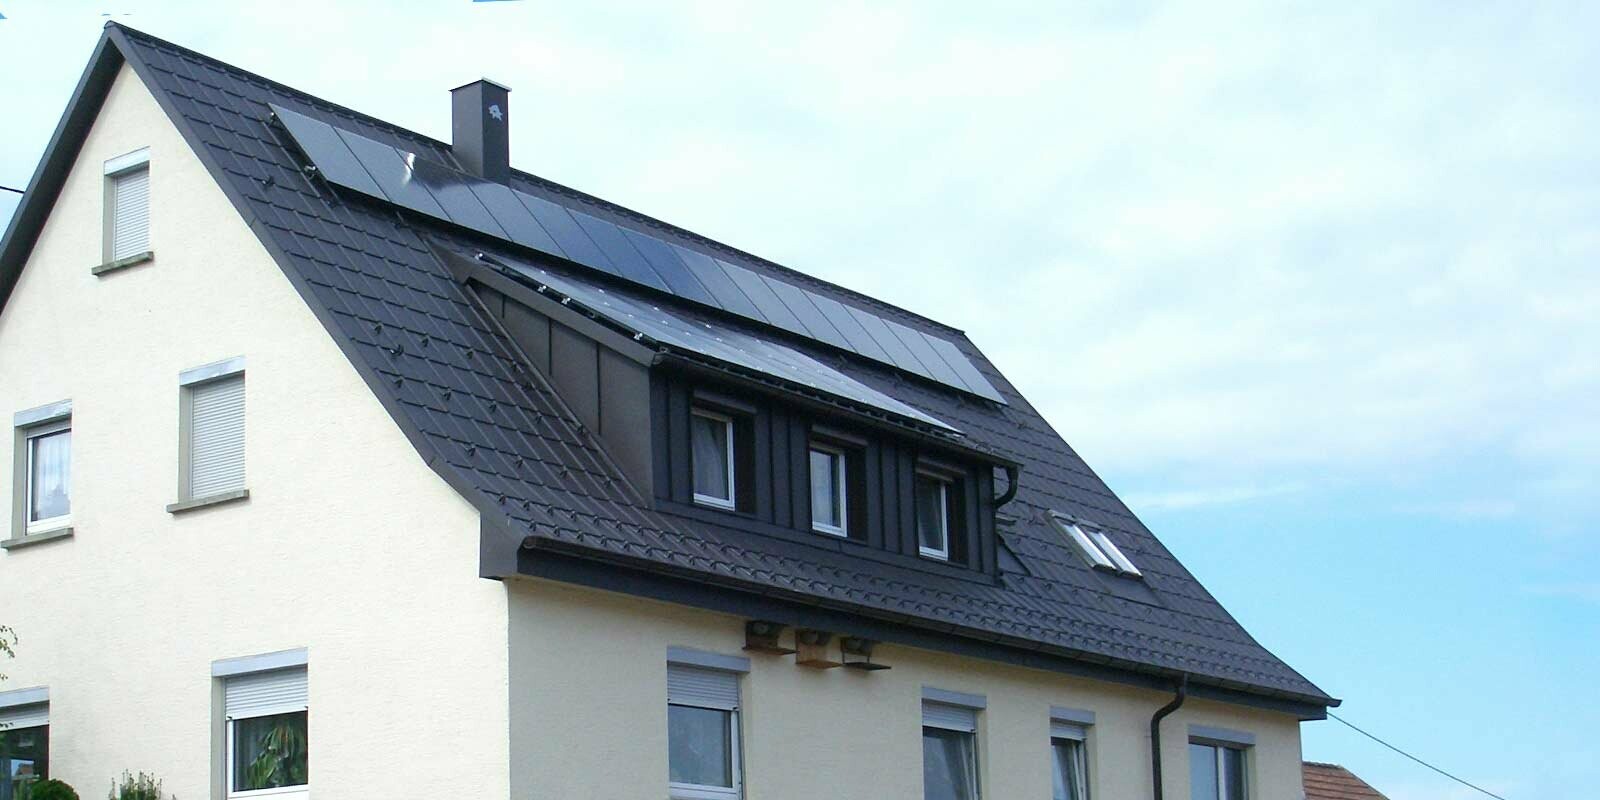 Toit récemment rénové à l’aide de tuiles PREFA couleur anthracite, la lucarne a été recouverte d’éléments Prefalz. Le toit est pourvu d’une installation photovoltaïque.